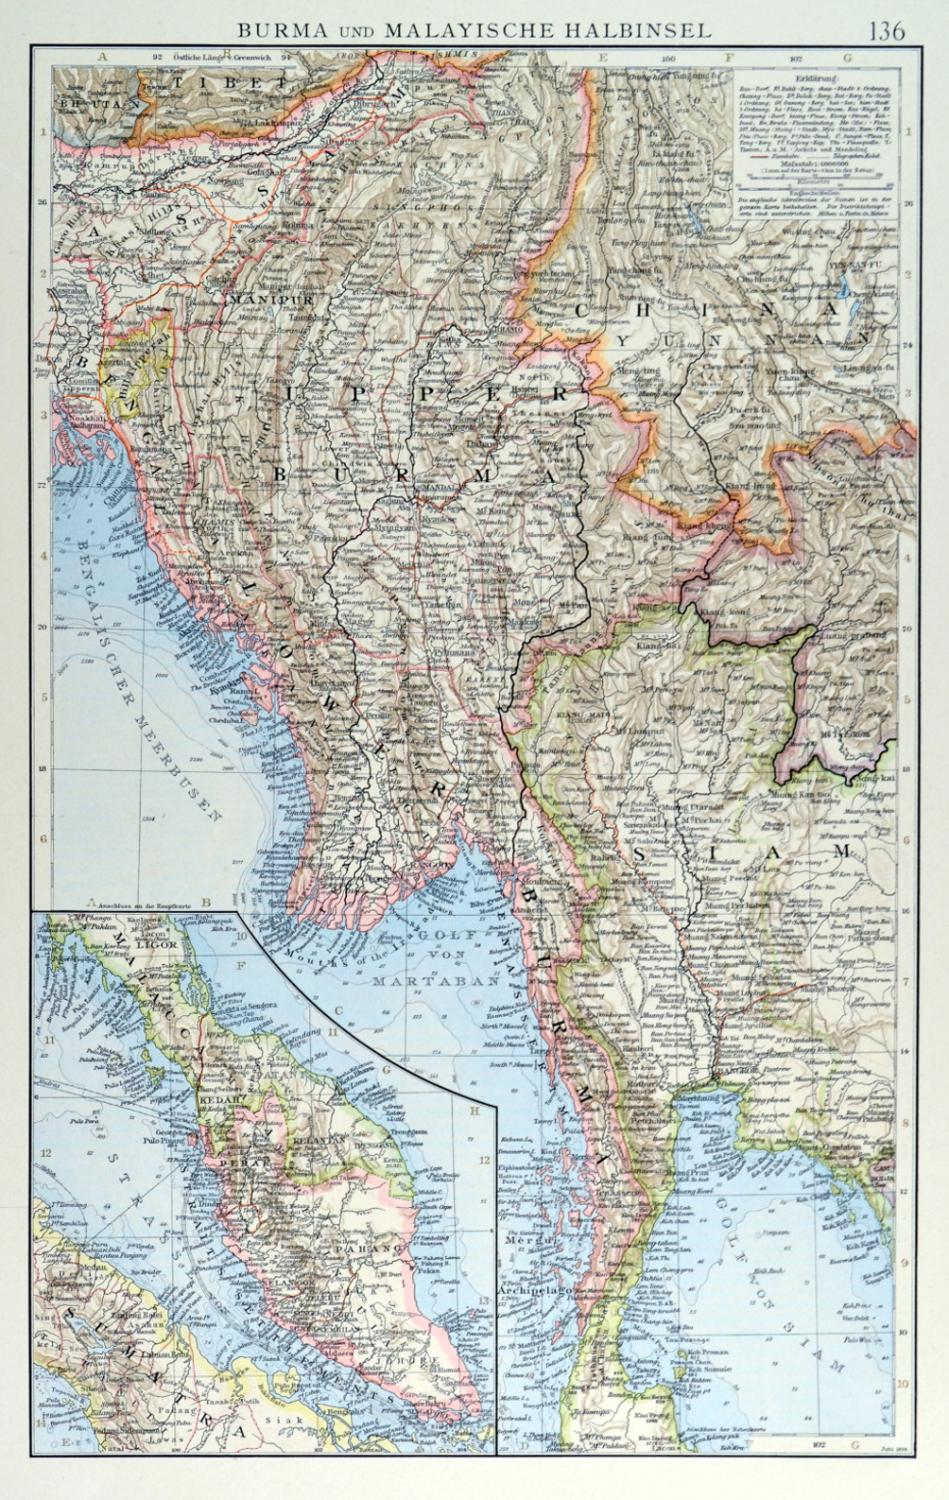 MALAYSIA. - Karte. "Burma und Malayische Halbinsel", mit einer